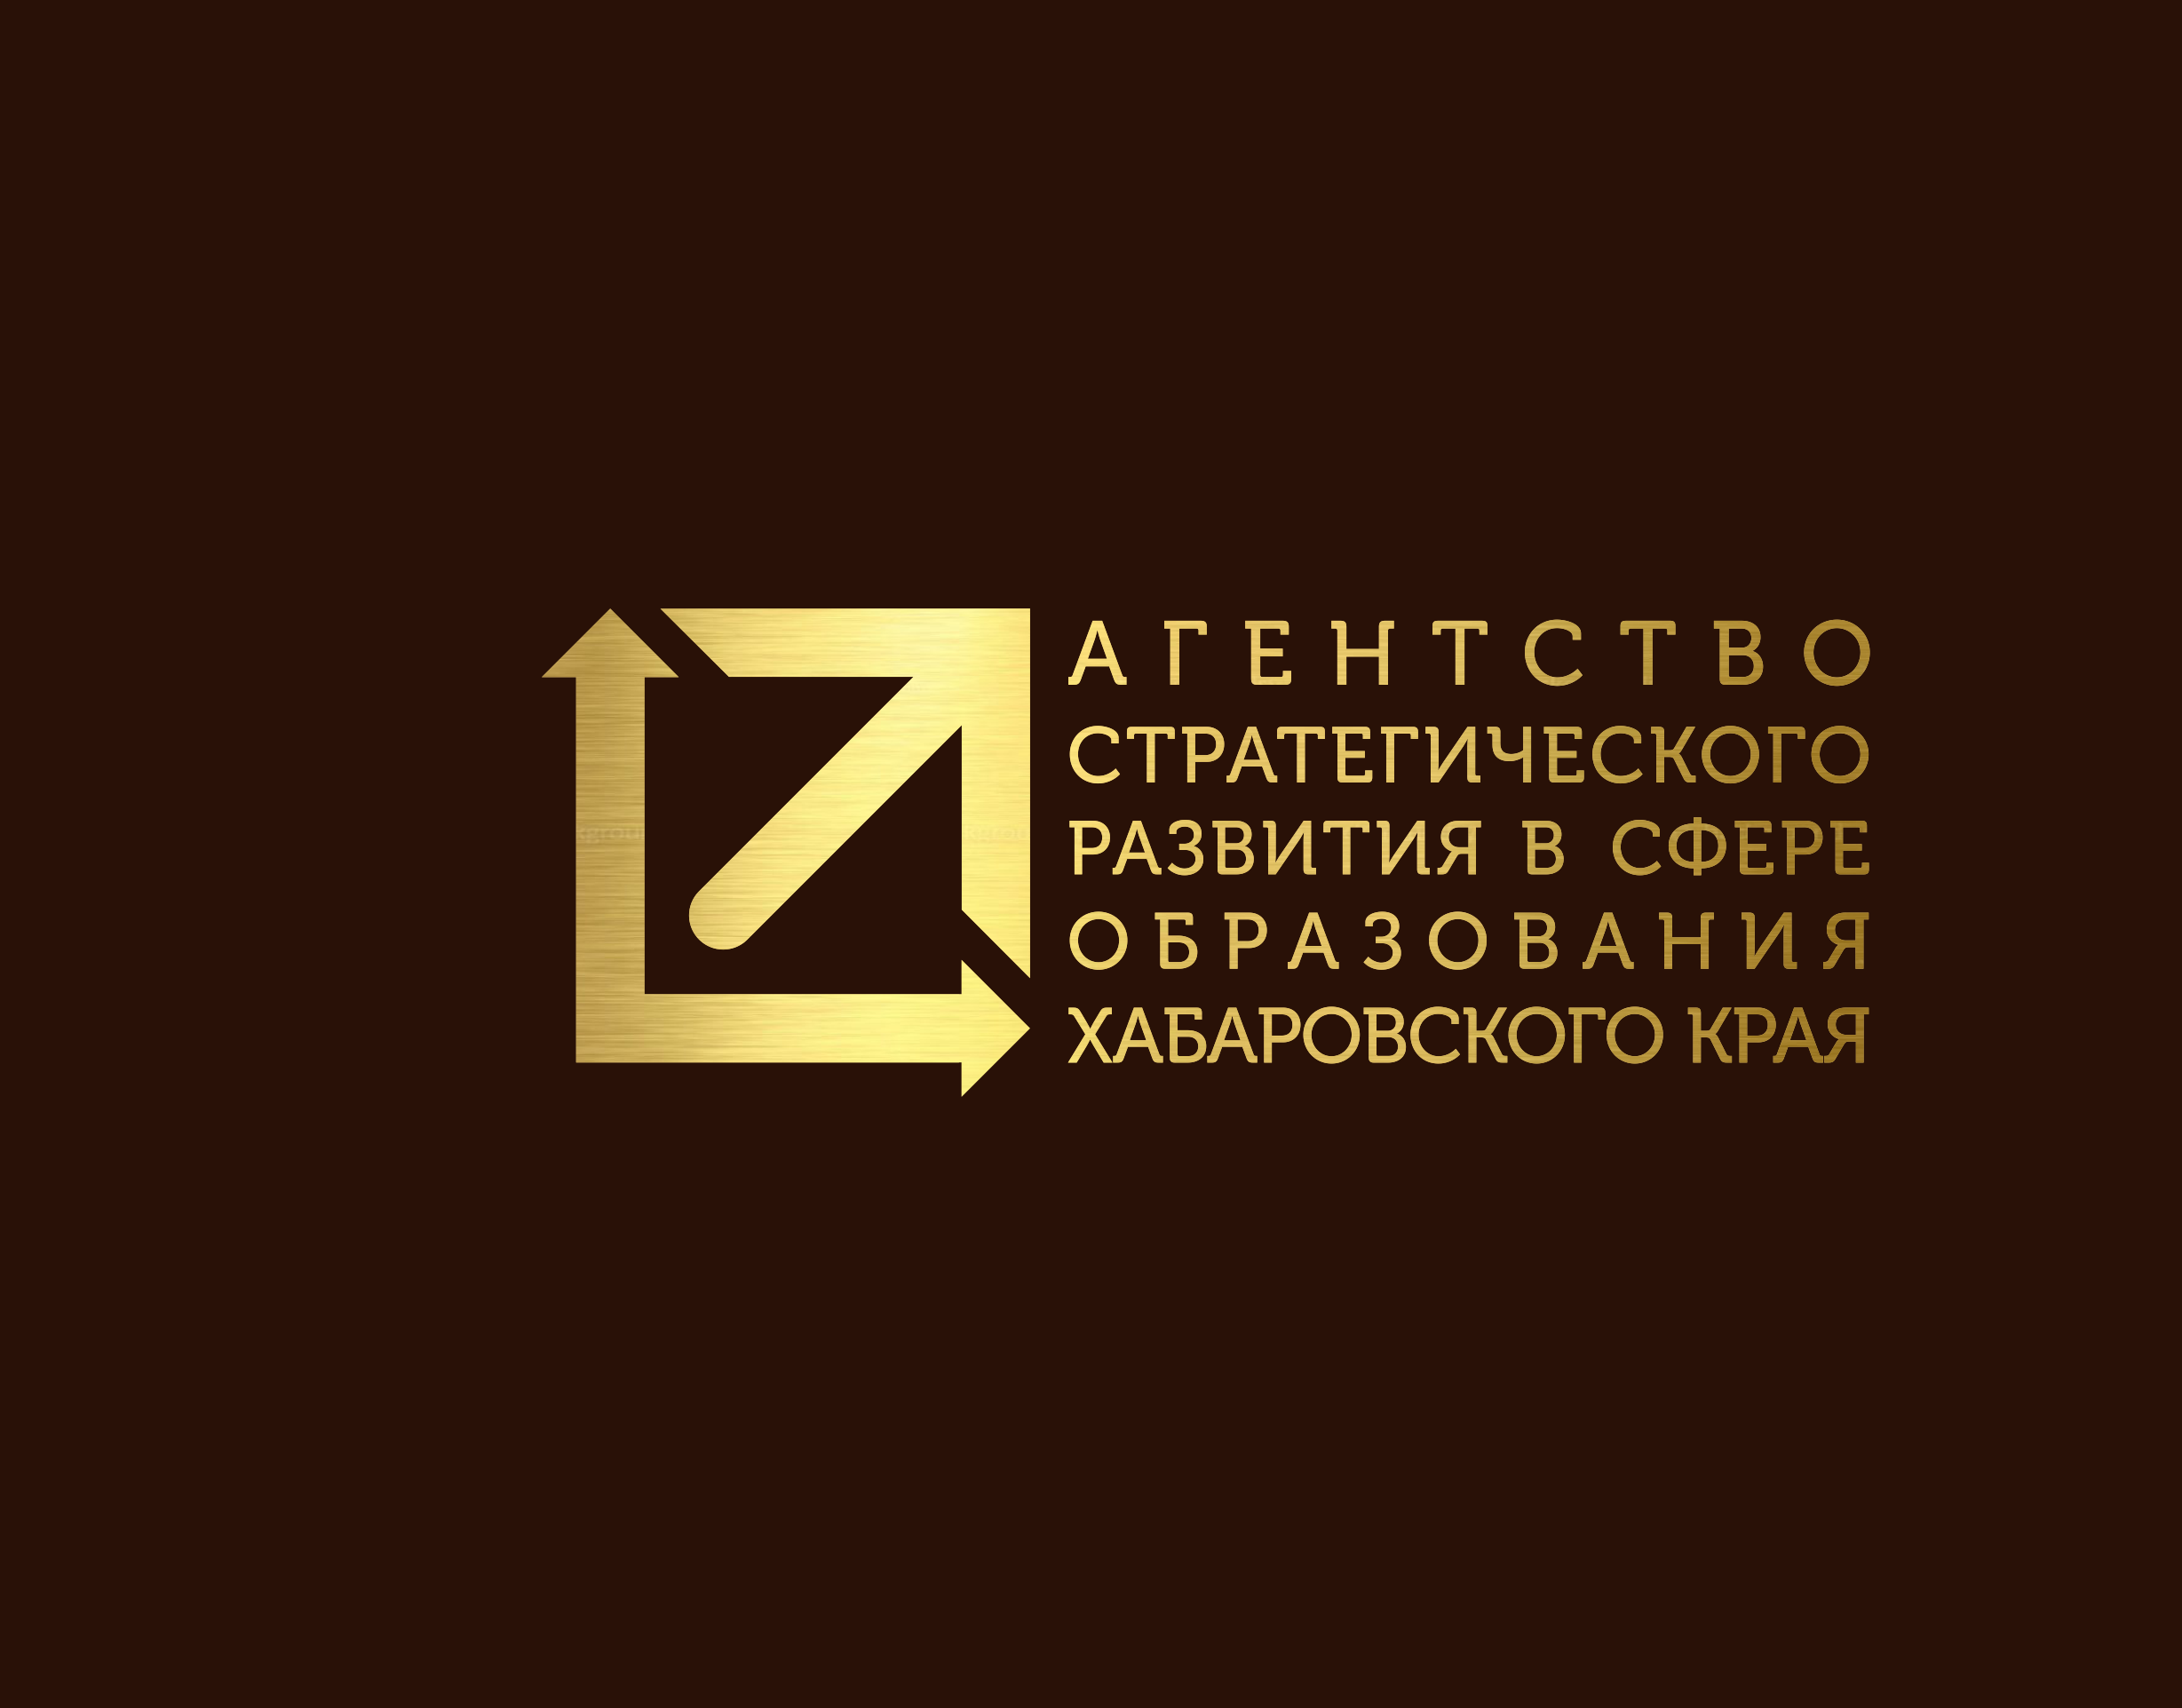 Агентство стратегического развития. Центр агентство стратегического развития логотип. Сайт иро хабаровск